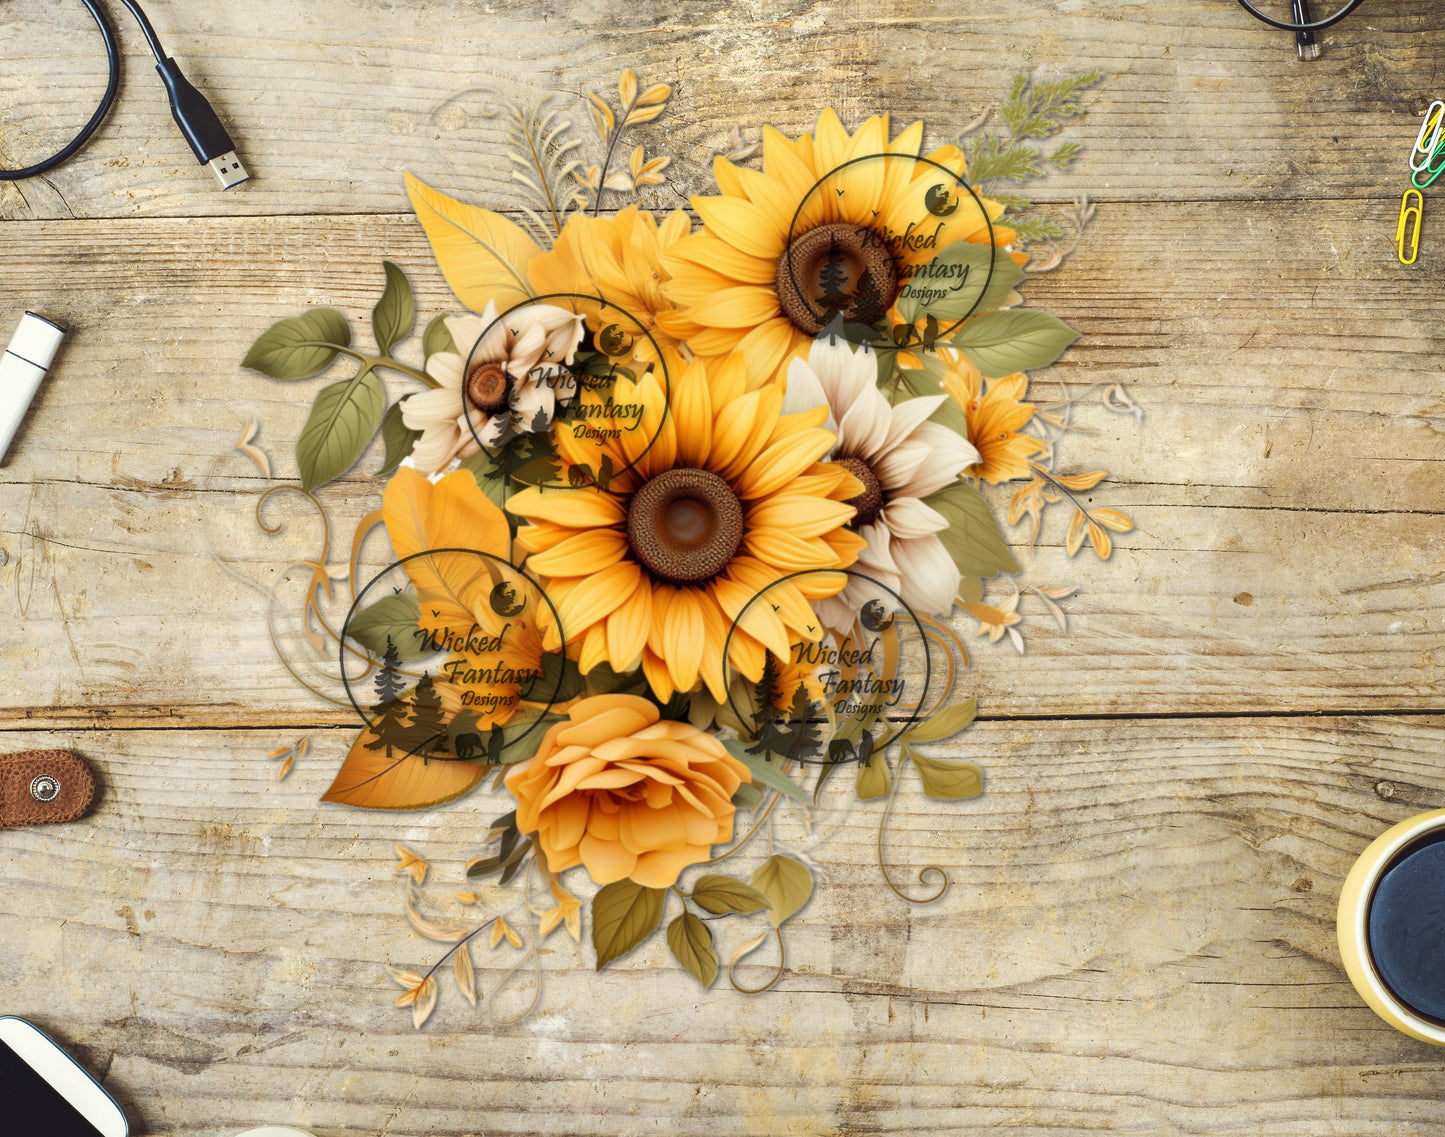 UVDTF Sunflower and Cream Flower Bouquet Arrangement